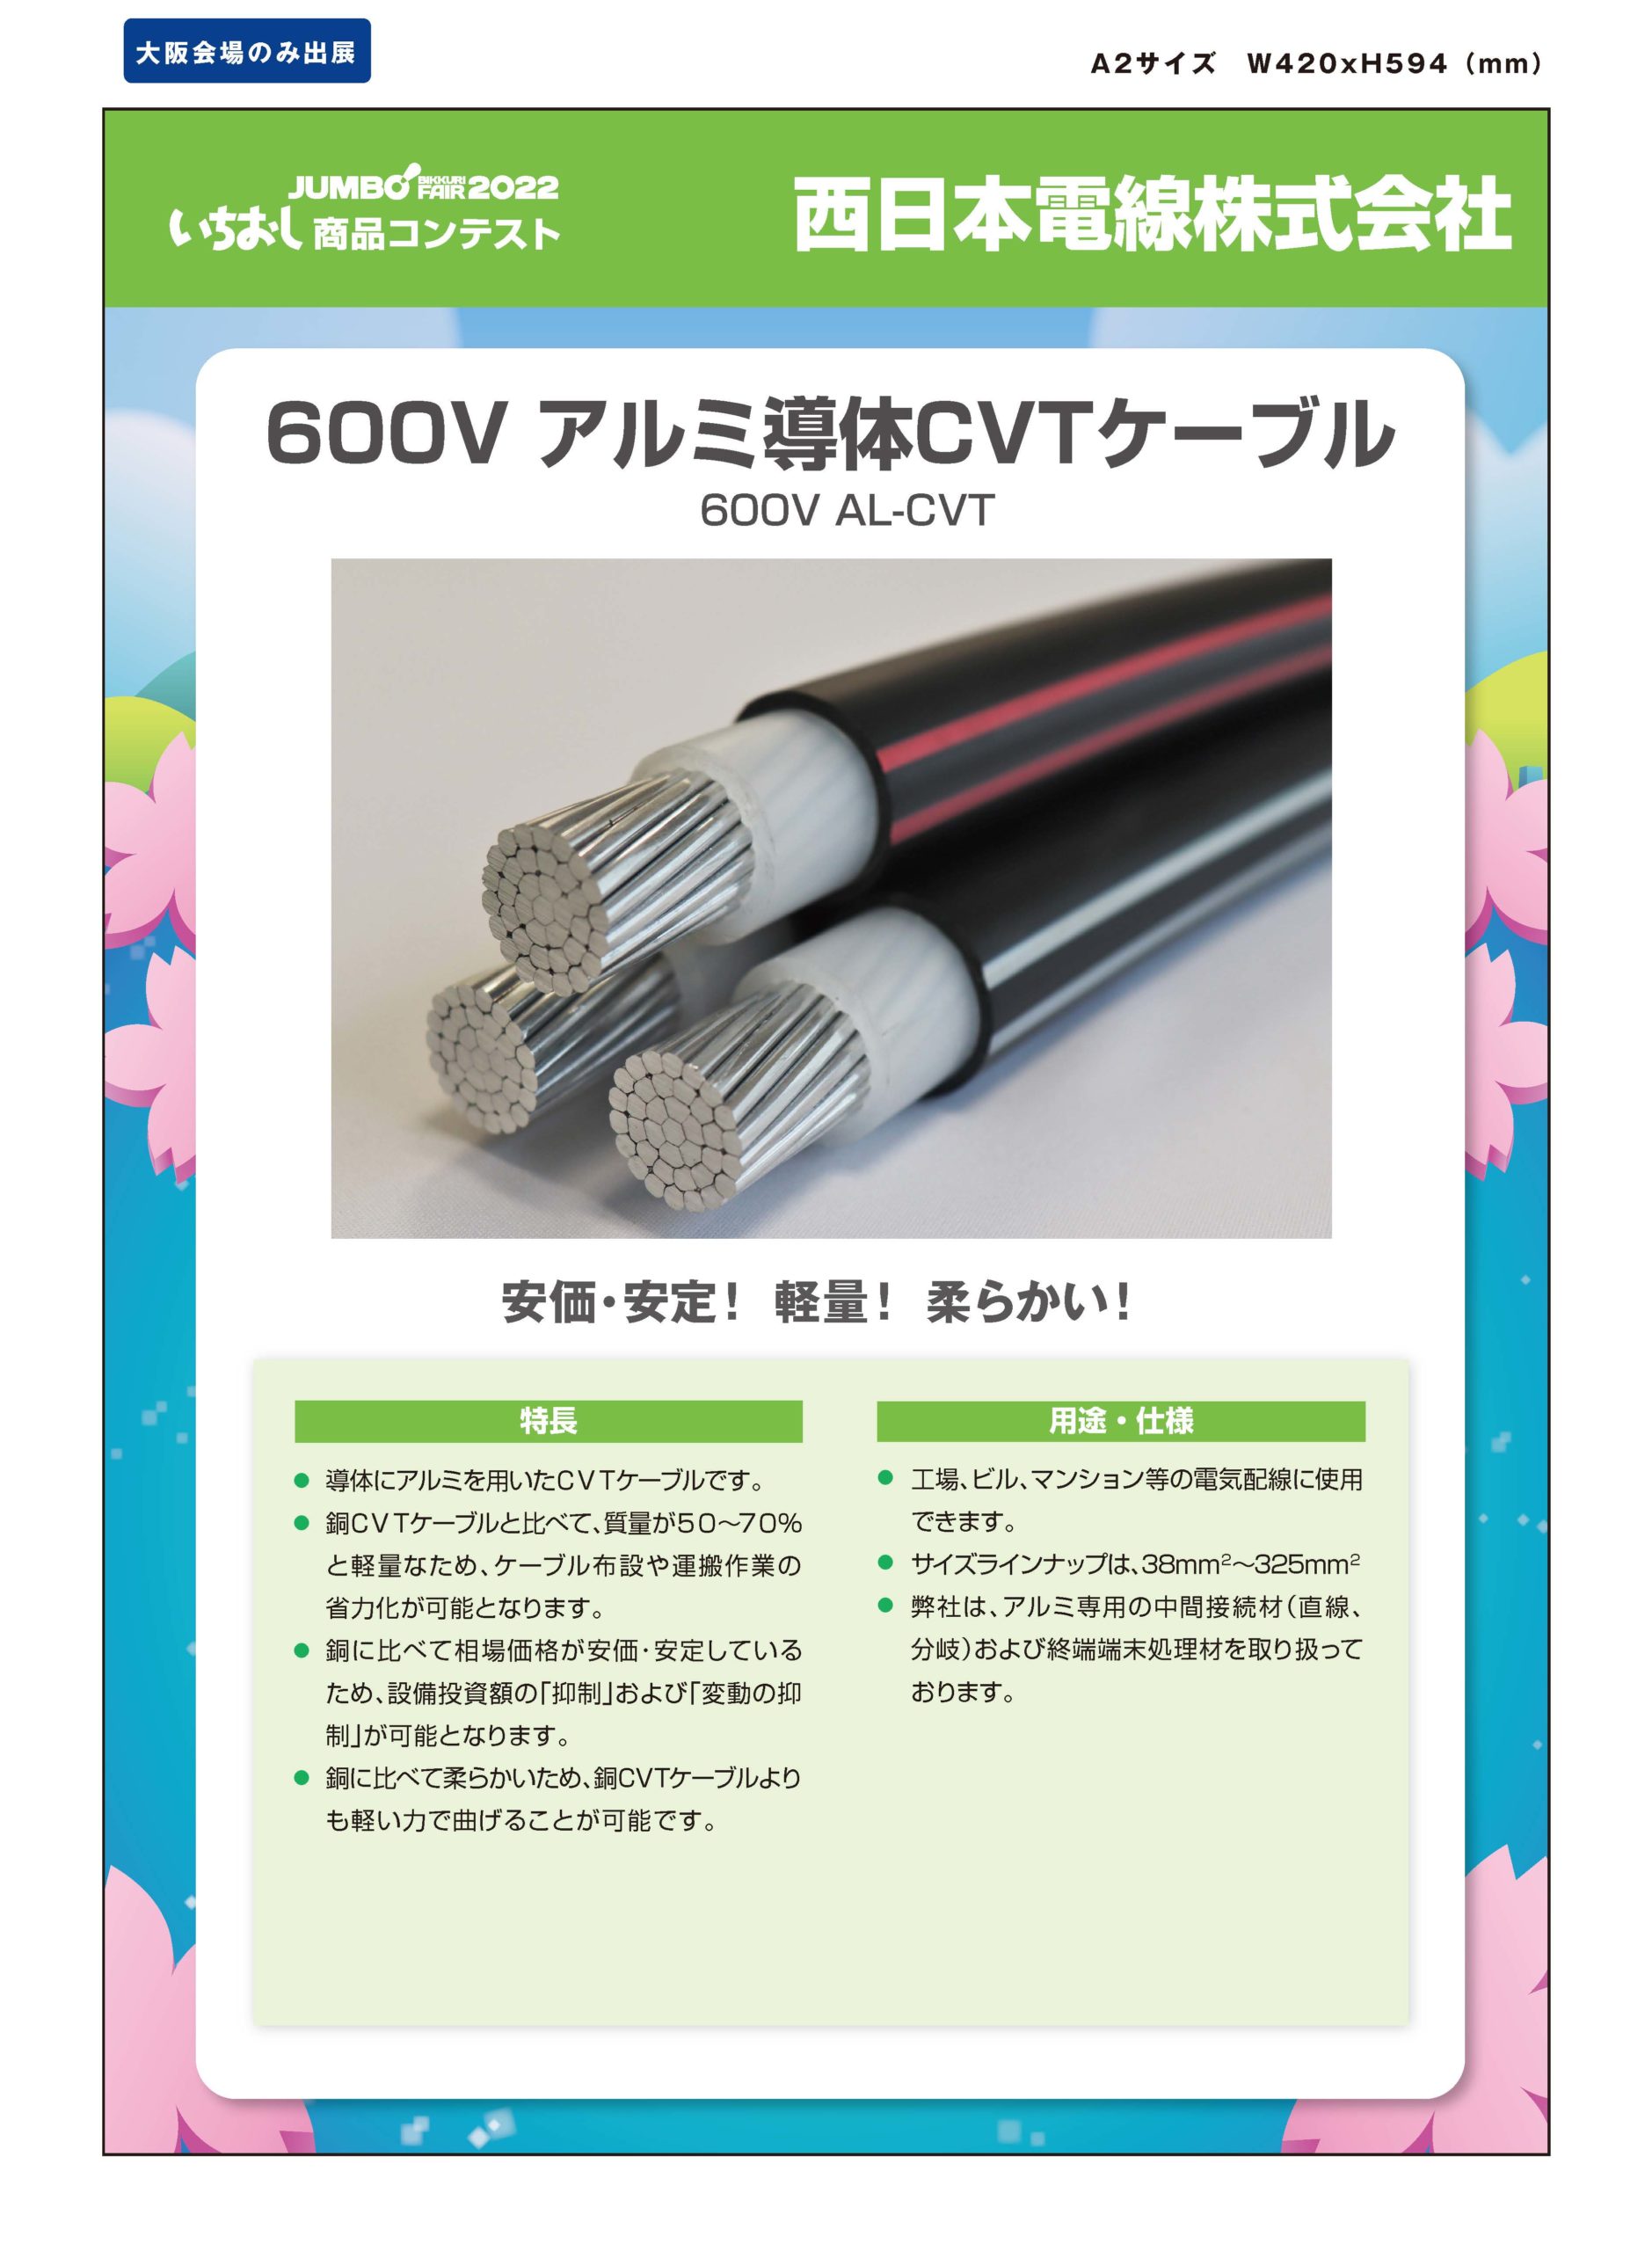 「600V アルミ導体CVTケーブル」西日本電線株式会社の画像